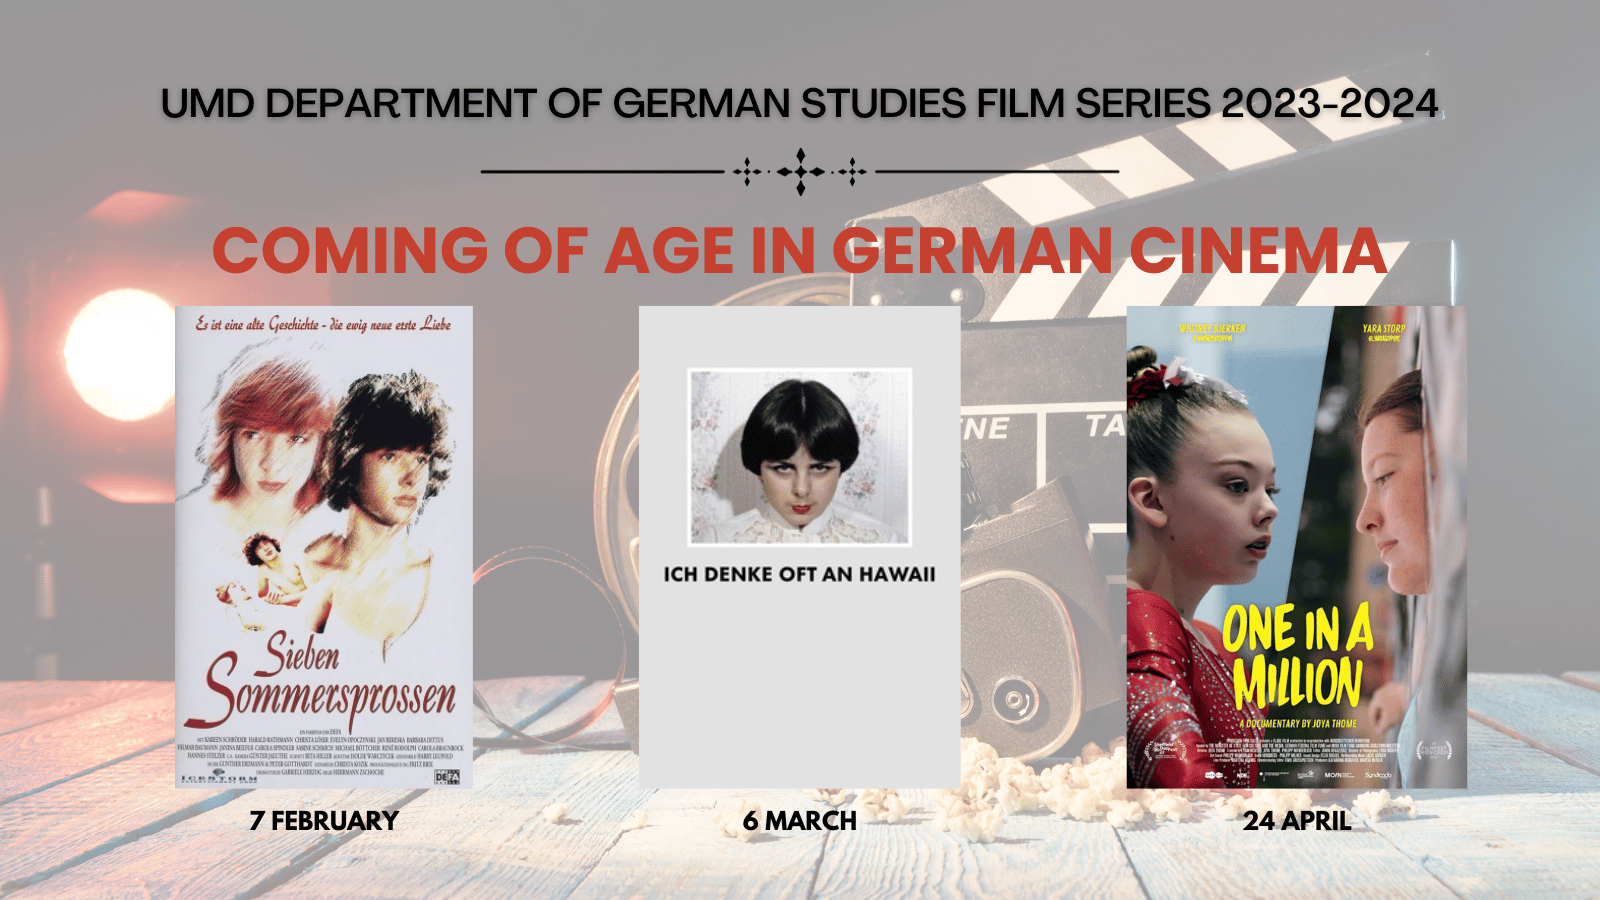 german studies films for spring images inset